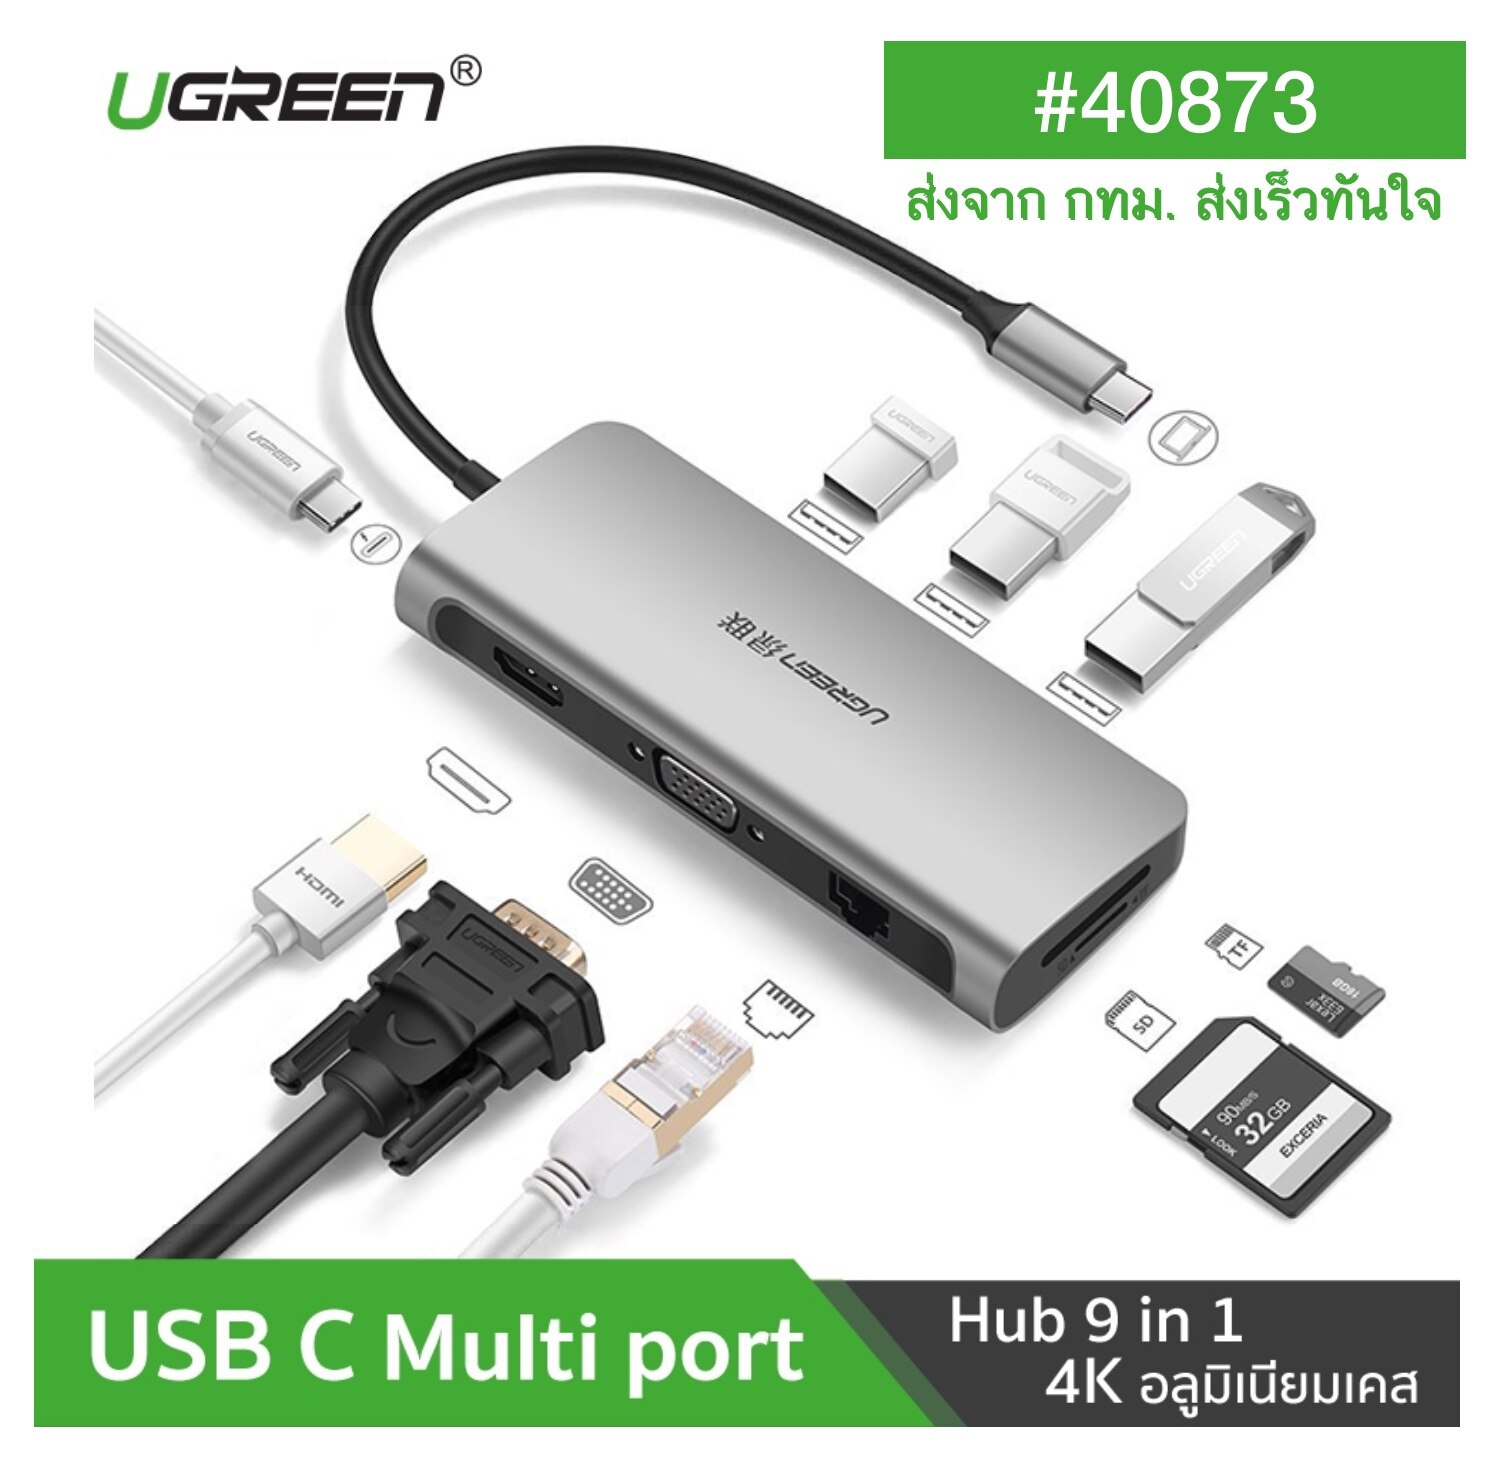 ของแท้ ส่งเร็ว จาก กทม UGREEN USB C USB3.1 ตัวแปลง TYPE C Hub 9 in 1 ไปเป็น HDMI 4K, VGA 1080P, Card Reader SD/TF, Lan Gigabit 1000Mbps, USB 3.0 Hub 3 ช่อง รุ่น 40873 รองรับ Macbook iMac, Surface, Samsung Galaxy Note8 9 s8 s9 s10, Huawei P20 P30